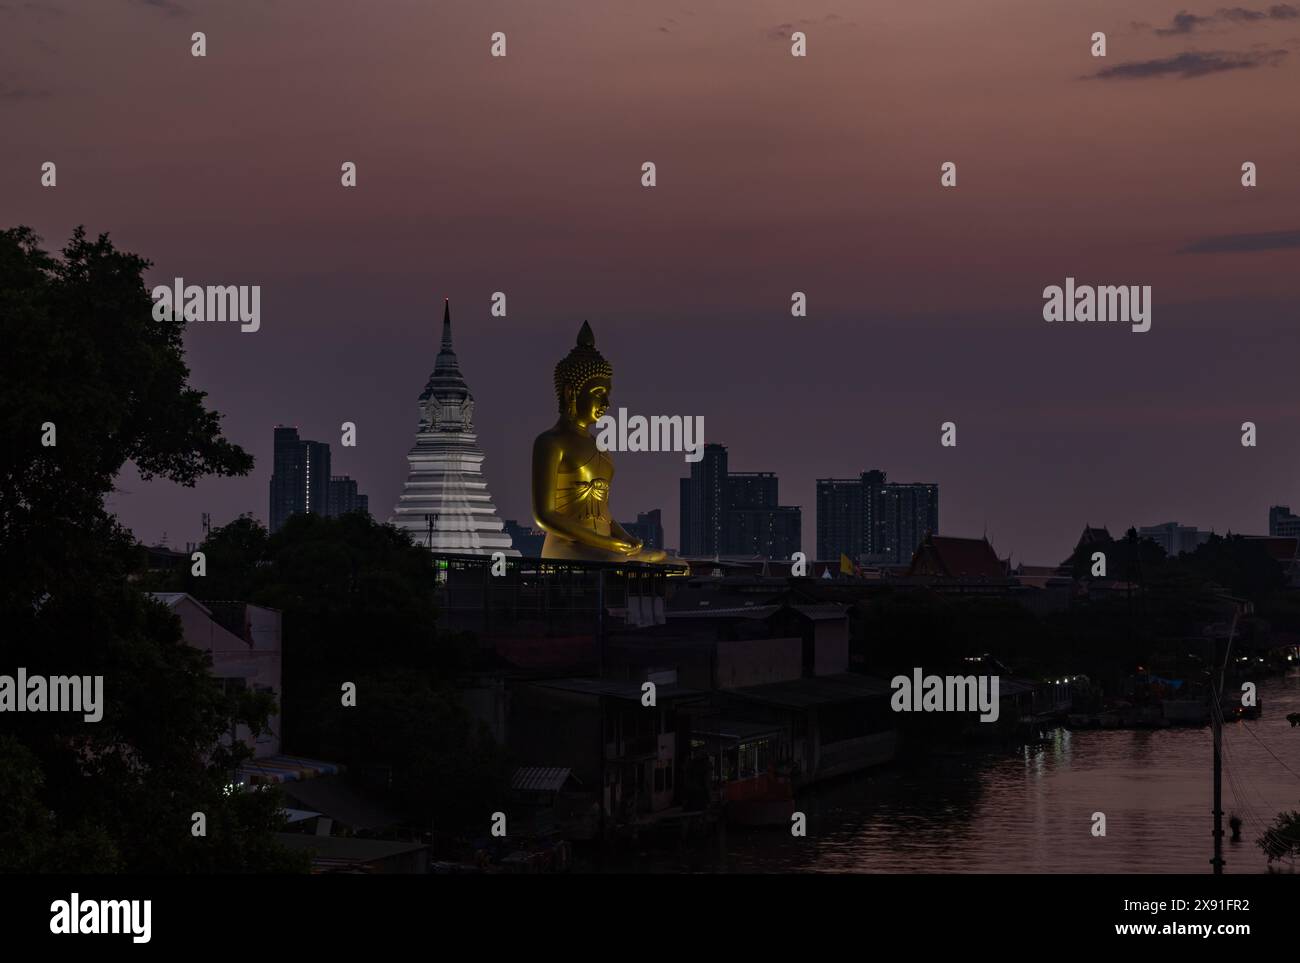 Un'immagine della grande statua di Buddha al tempio Wat Paknam Bhasicharoen, vista da lontano, al tramonto. Foto Stock